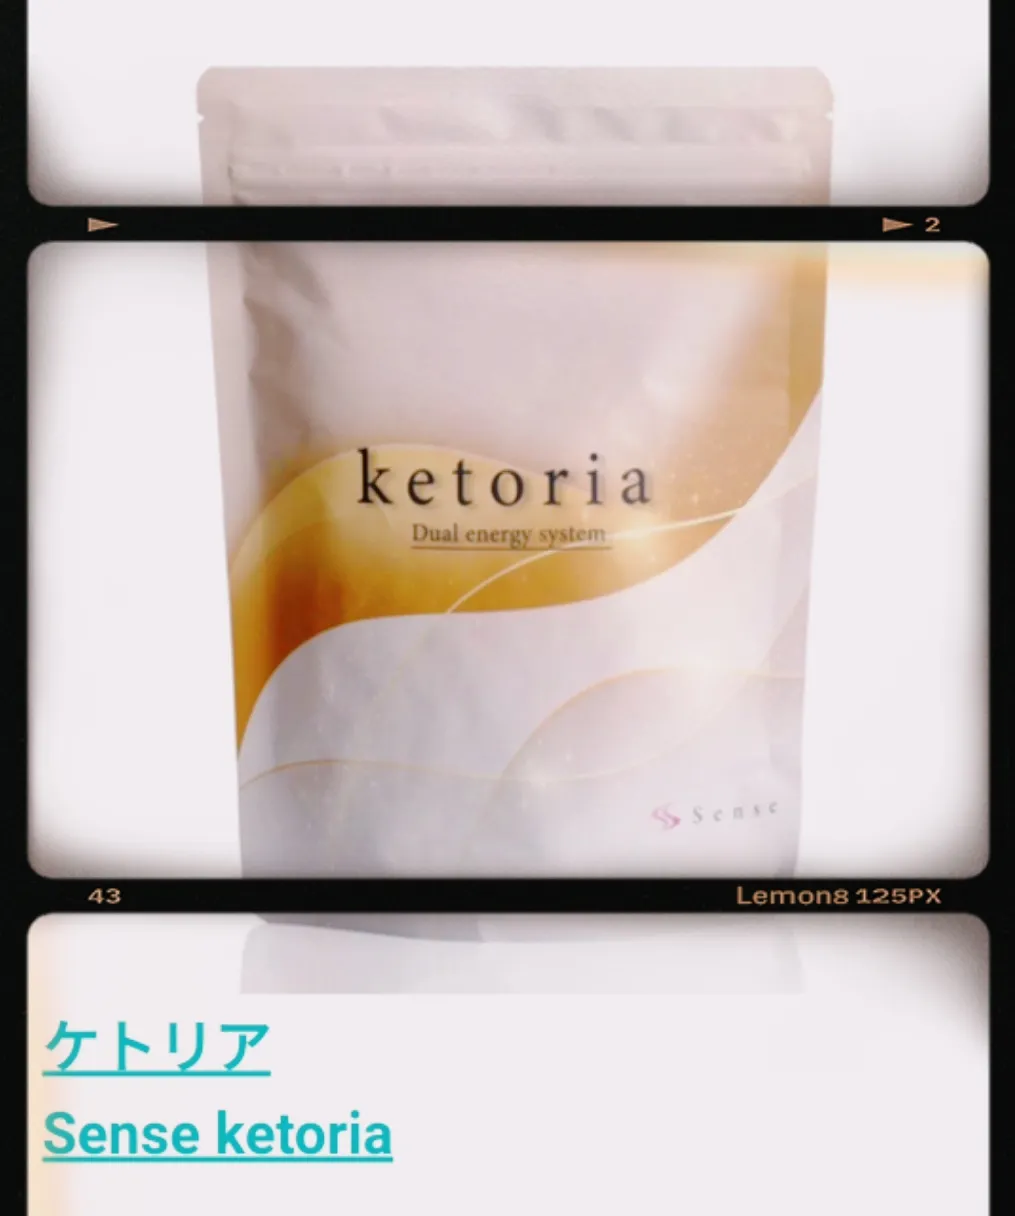 女性が喜ぶ センス ケトリア 1袋 Sense ketoria - ダイエット